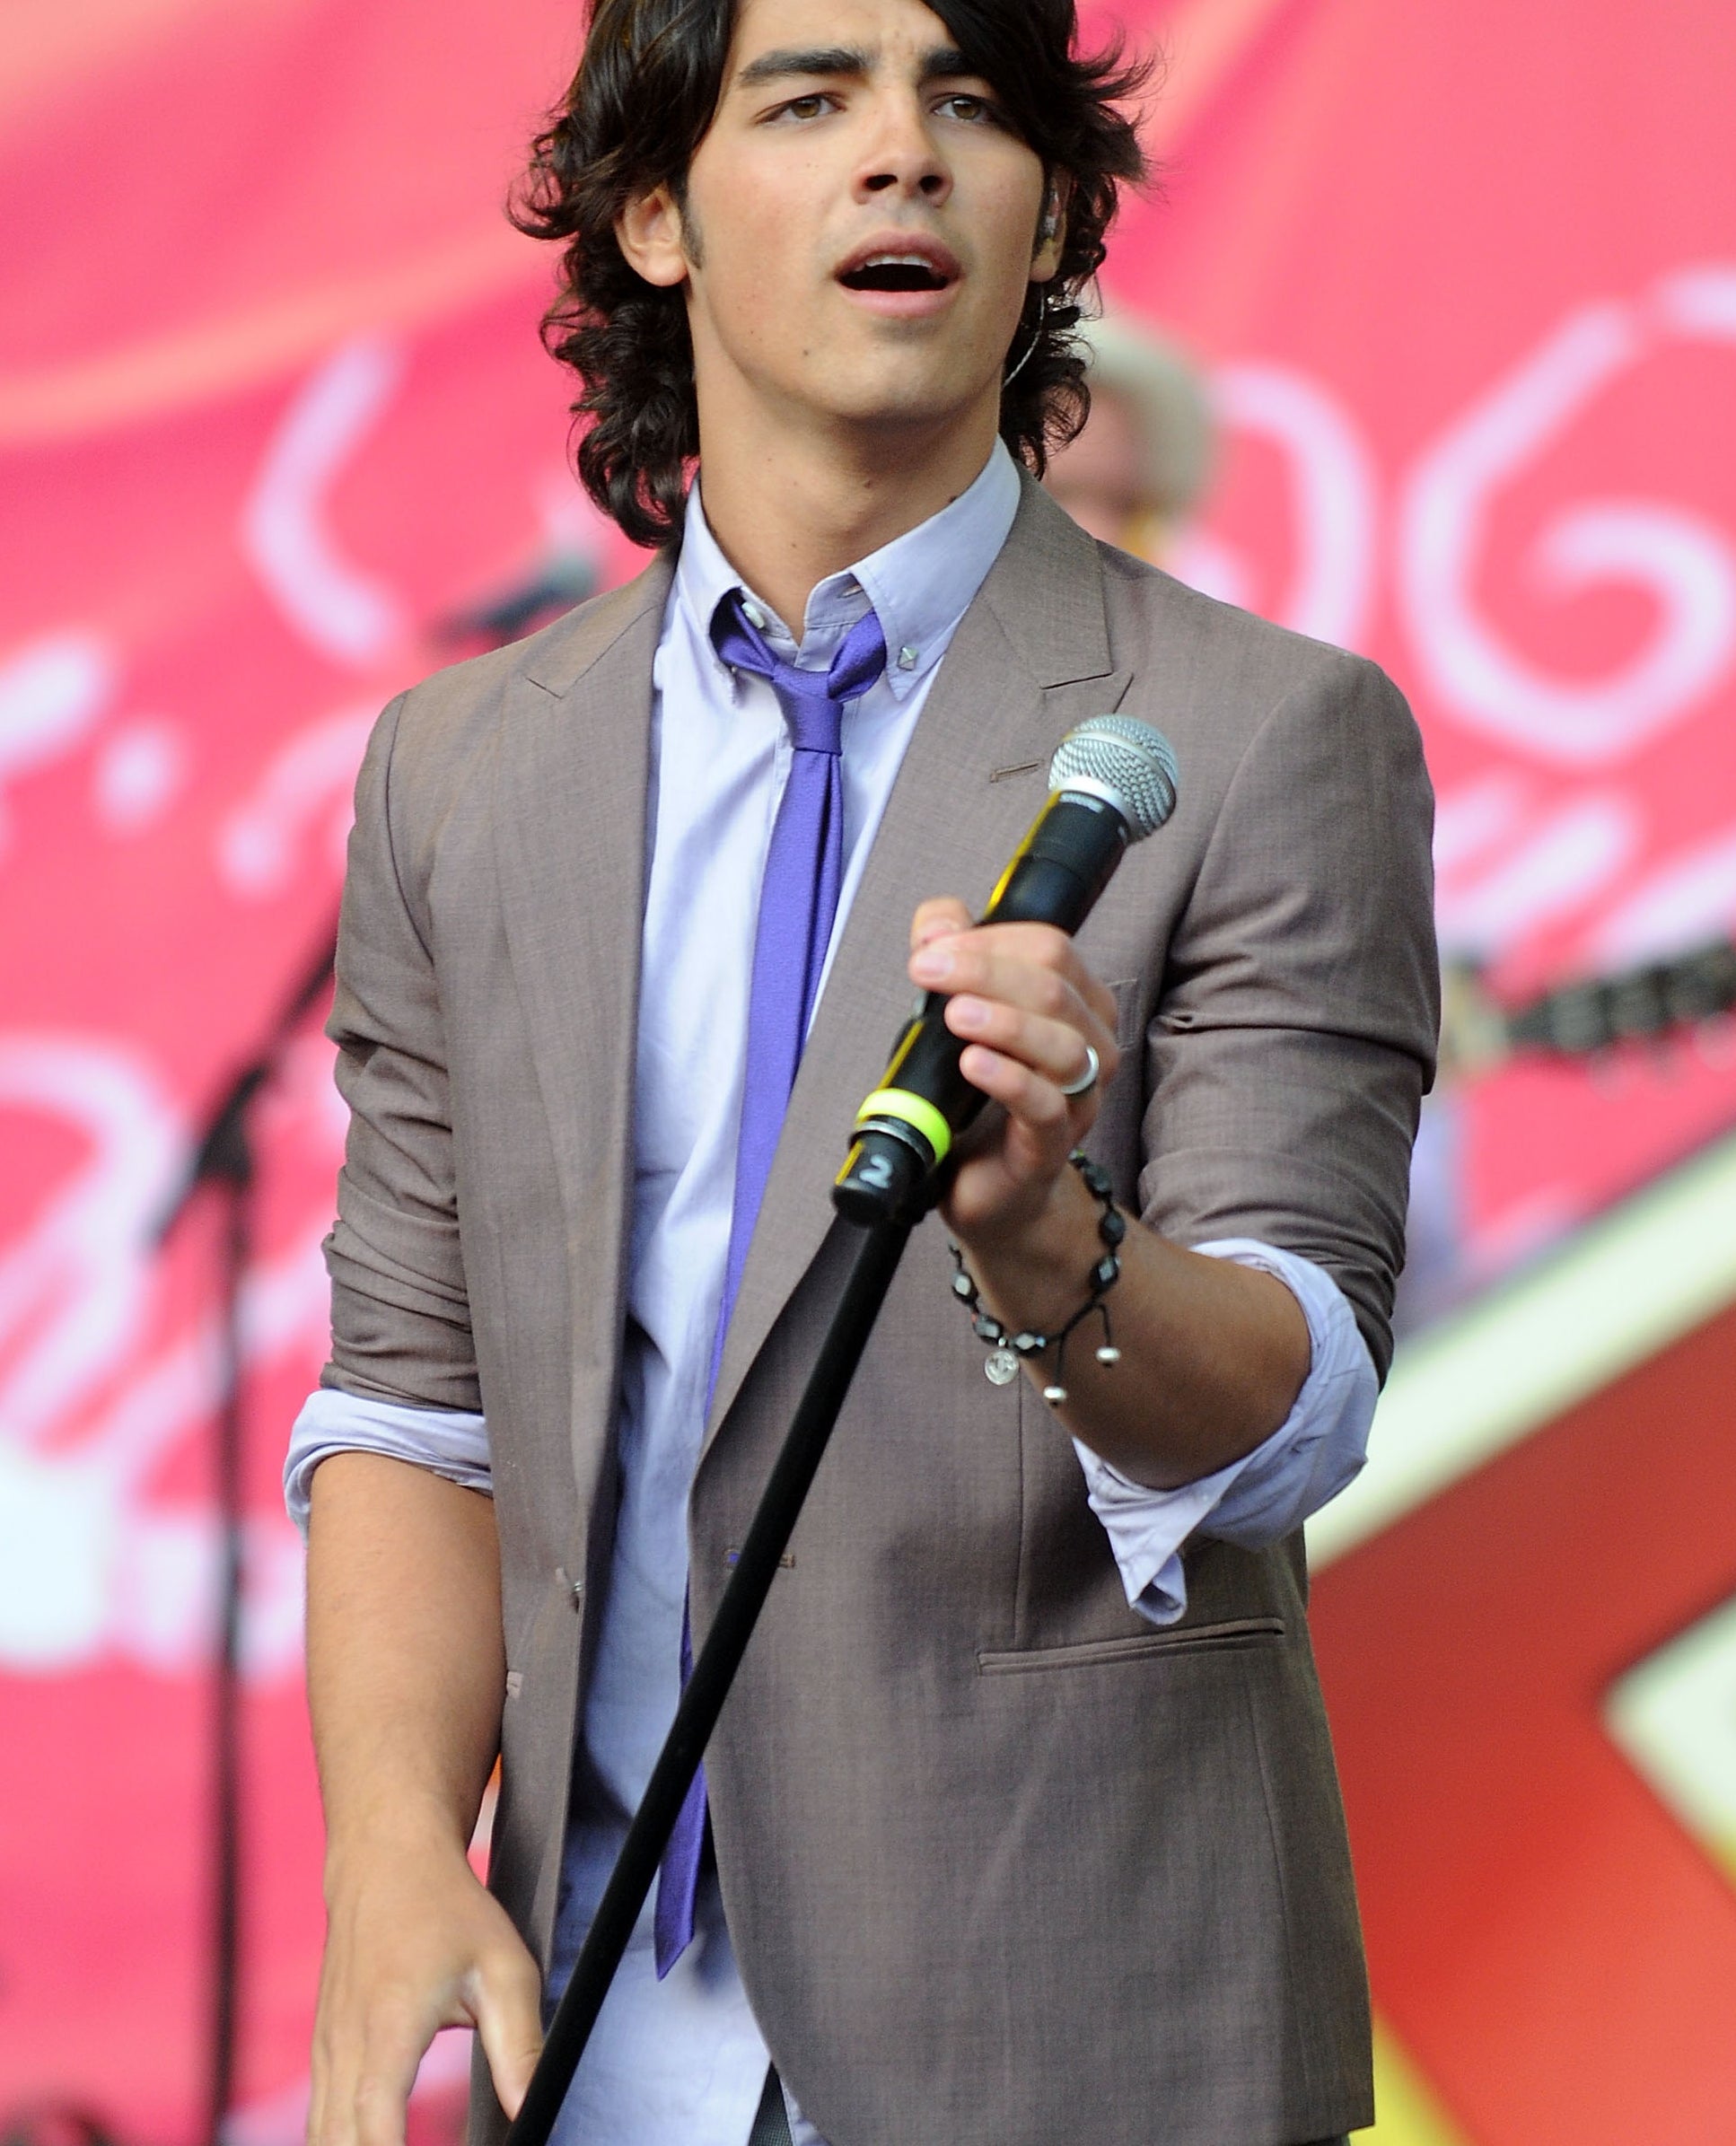 Joe Jonas performing onstage in a loose suit and tie